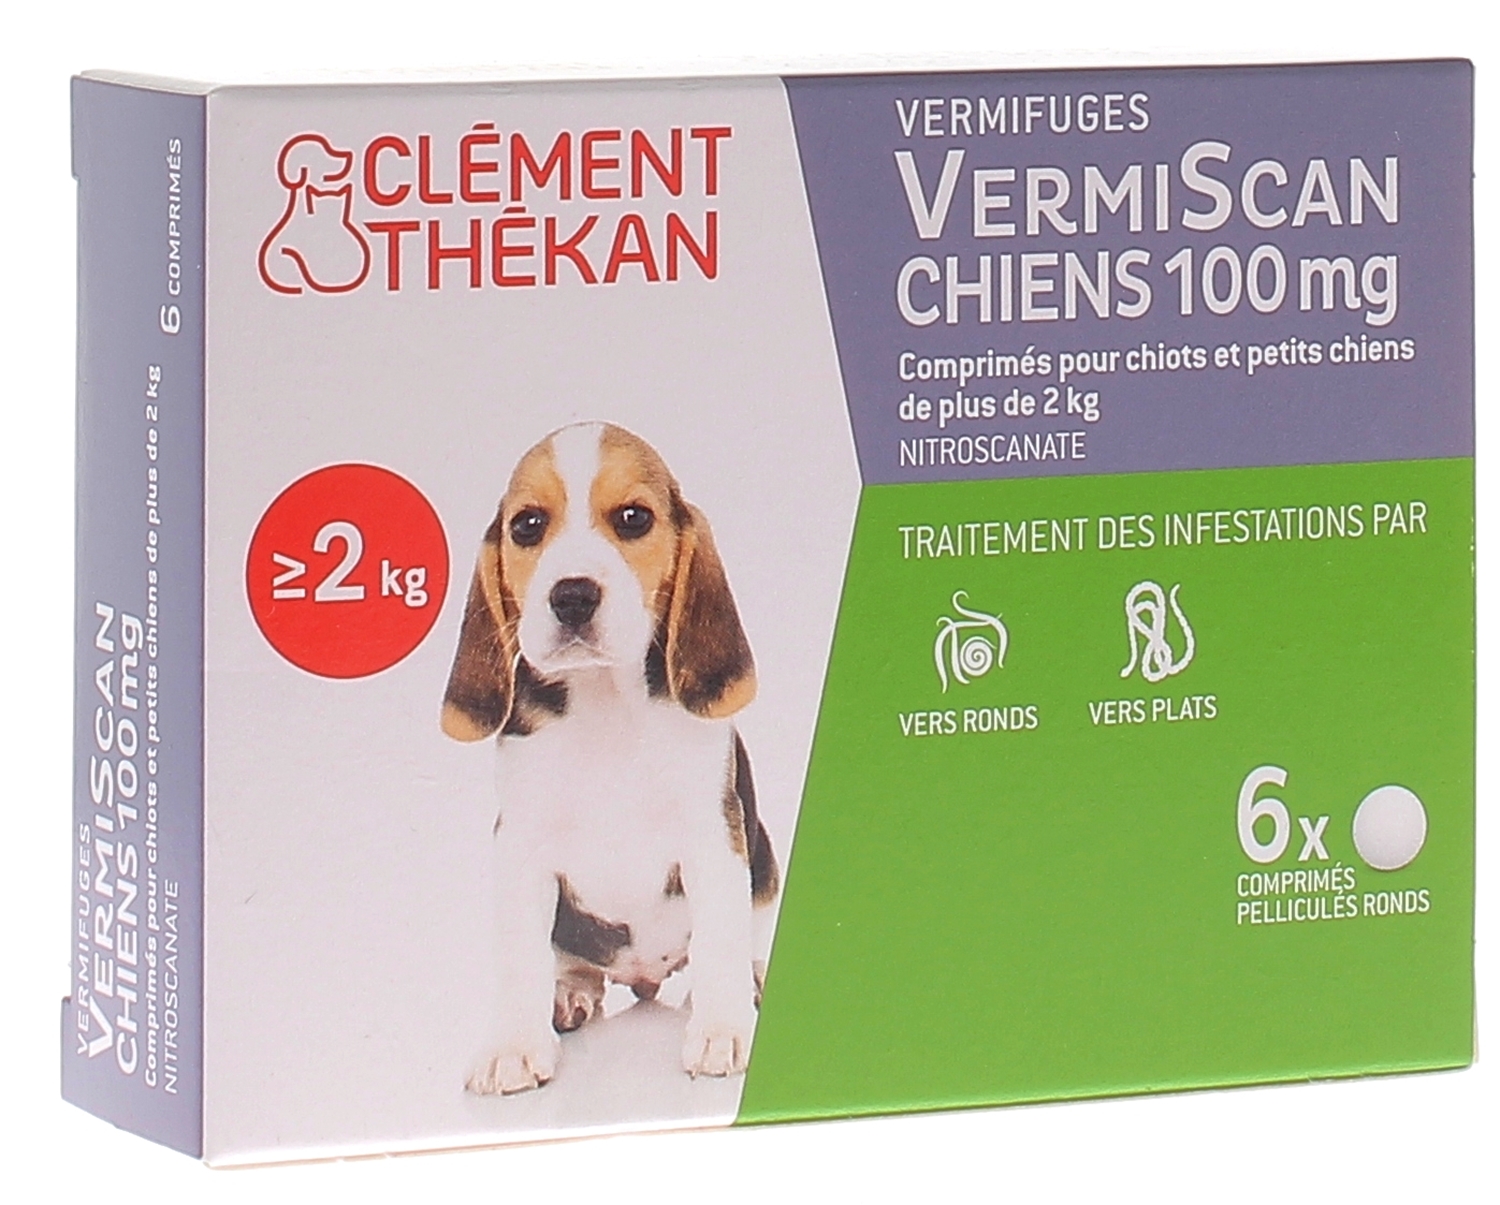 Milbemax Chien comprimé vermifuge - Vers ronds et plats